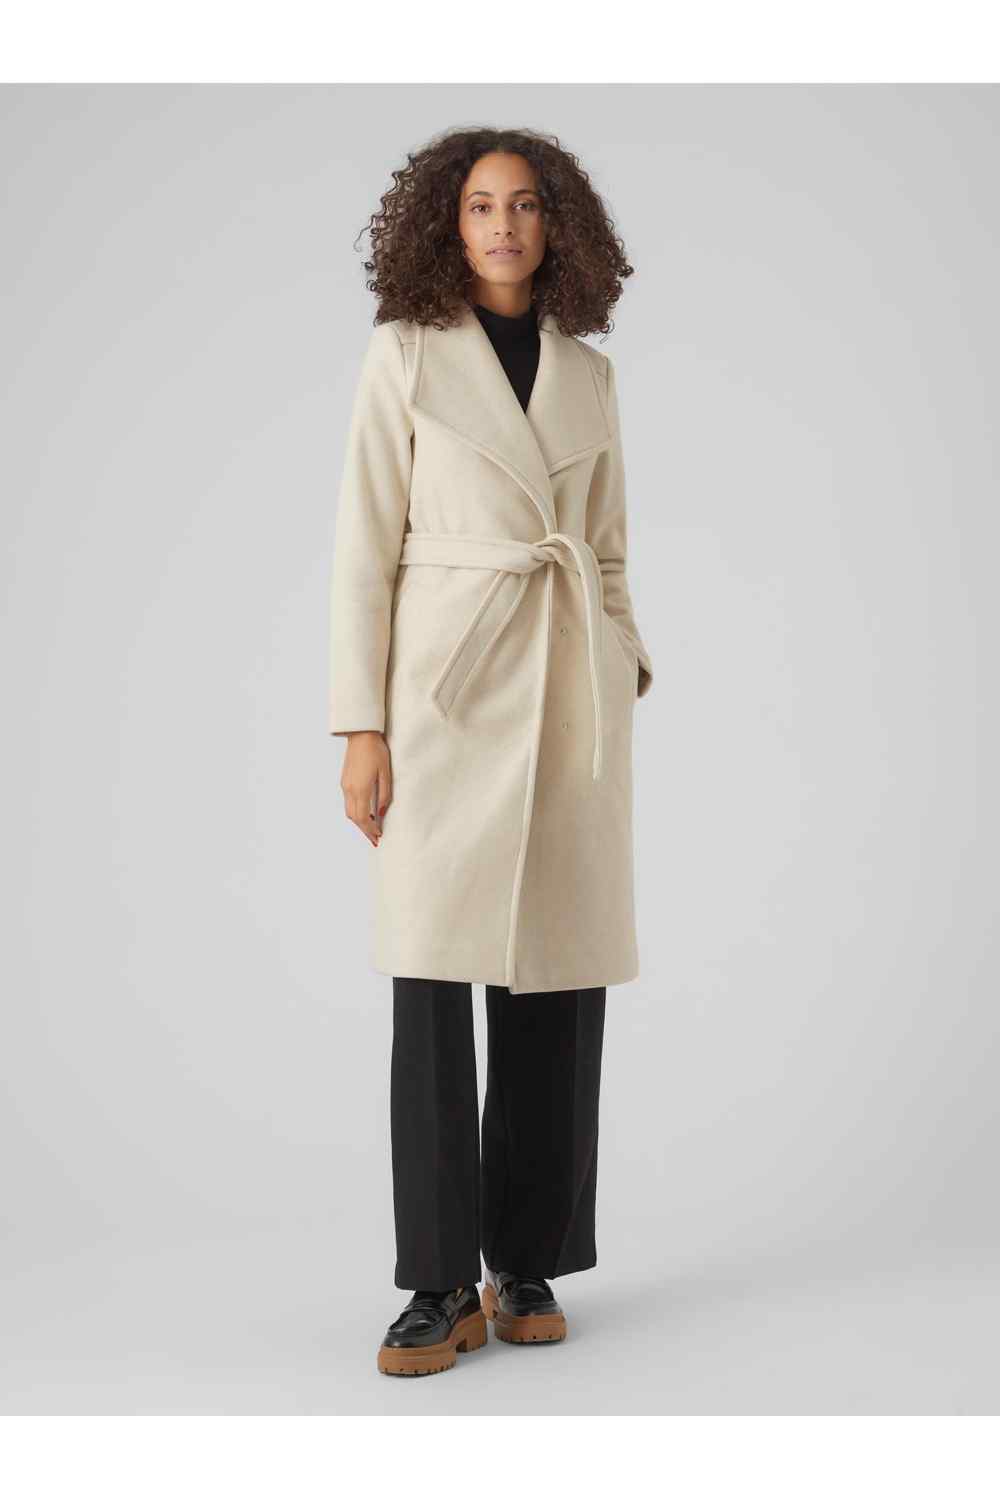 Vero Moda Paula Wrap Coat 1 Shaws Department Stores